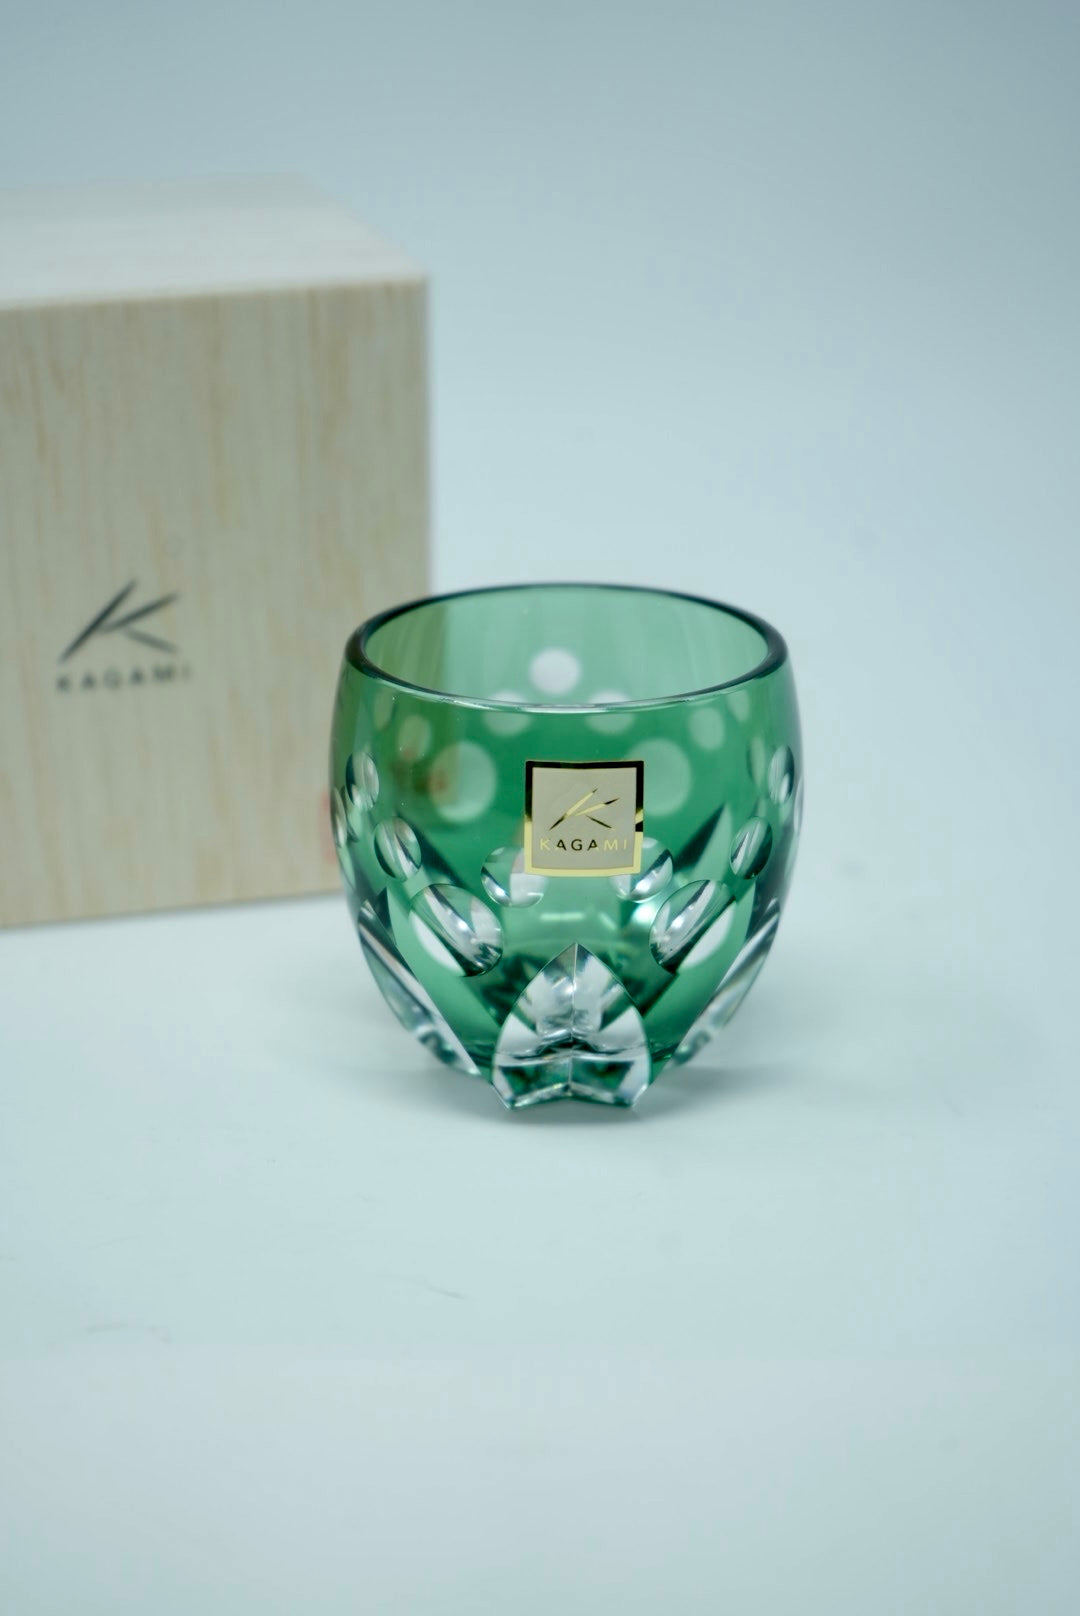 KAGAMI Crystal – Yochi Cups